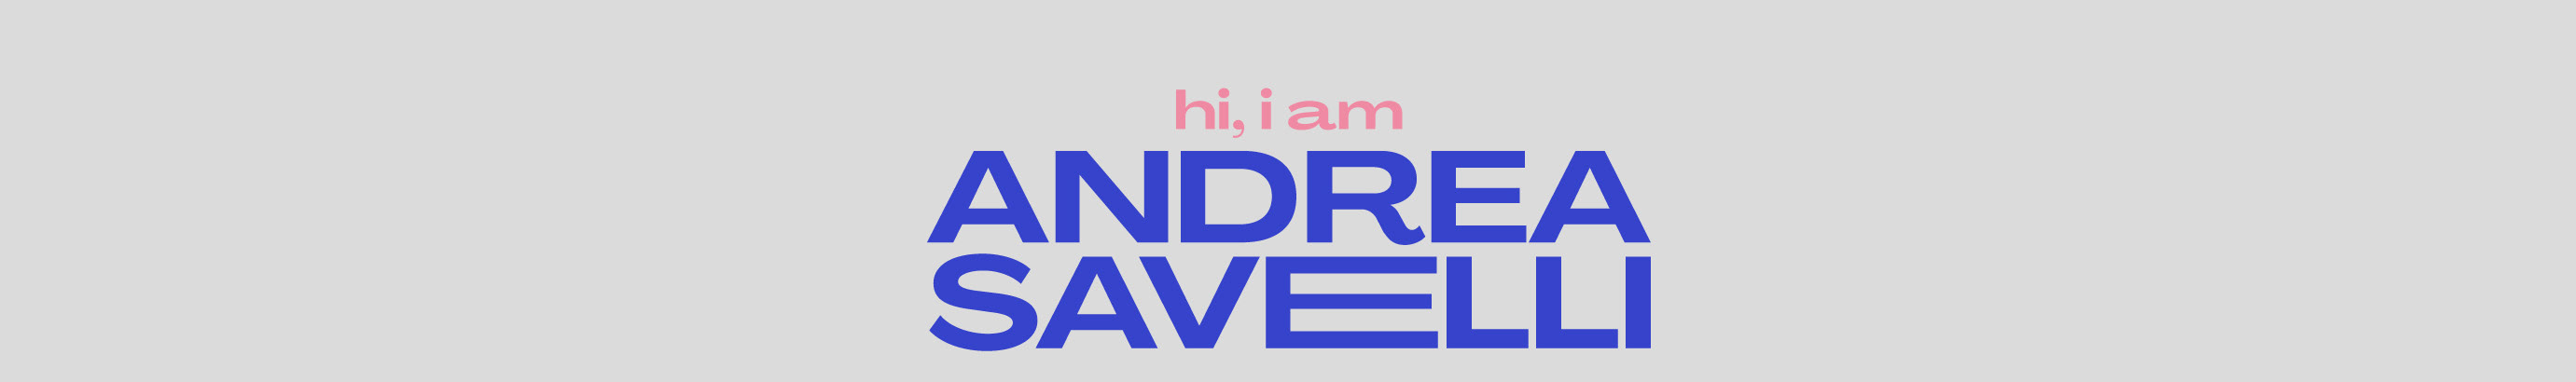 Andrea Savelli's profile banner